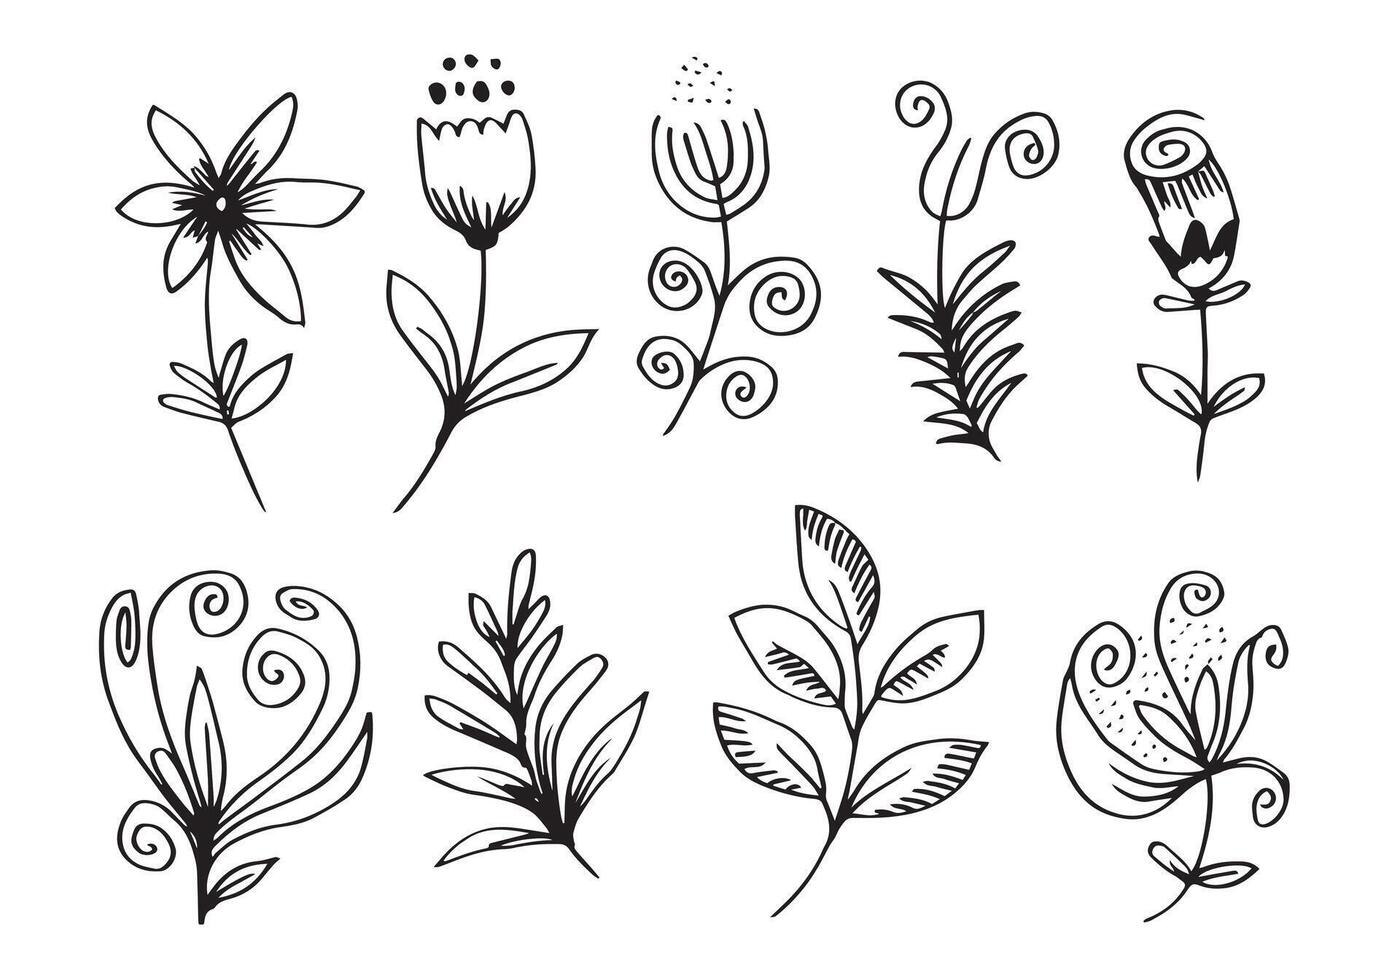 en samling handritade blombilder som klockblomma, krysantemum, solrosor, bomullsblommor och tropiska löv vektor